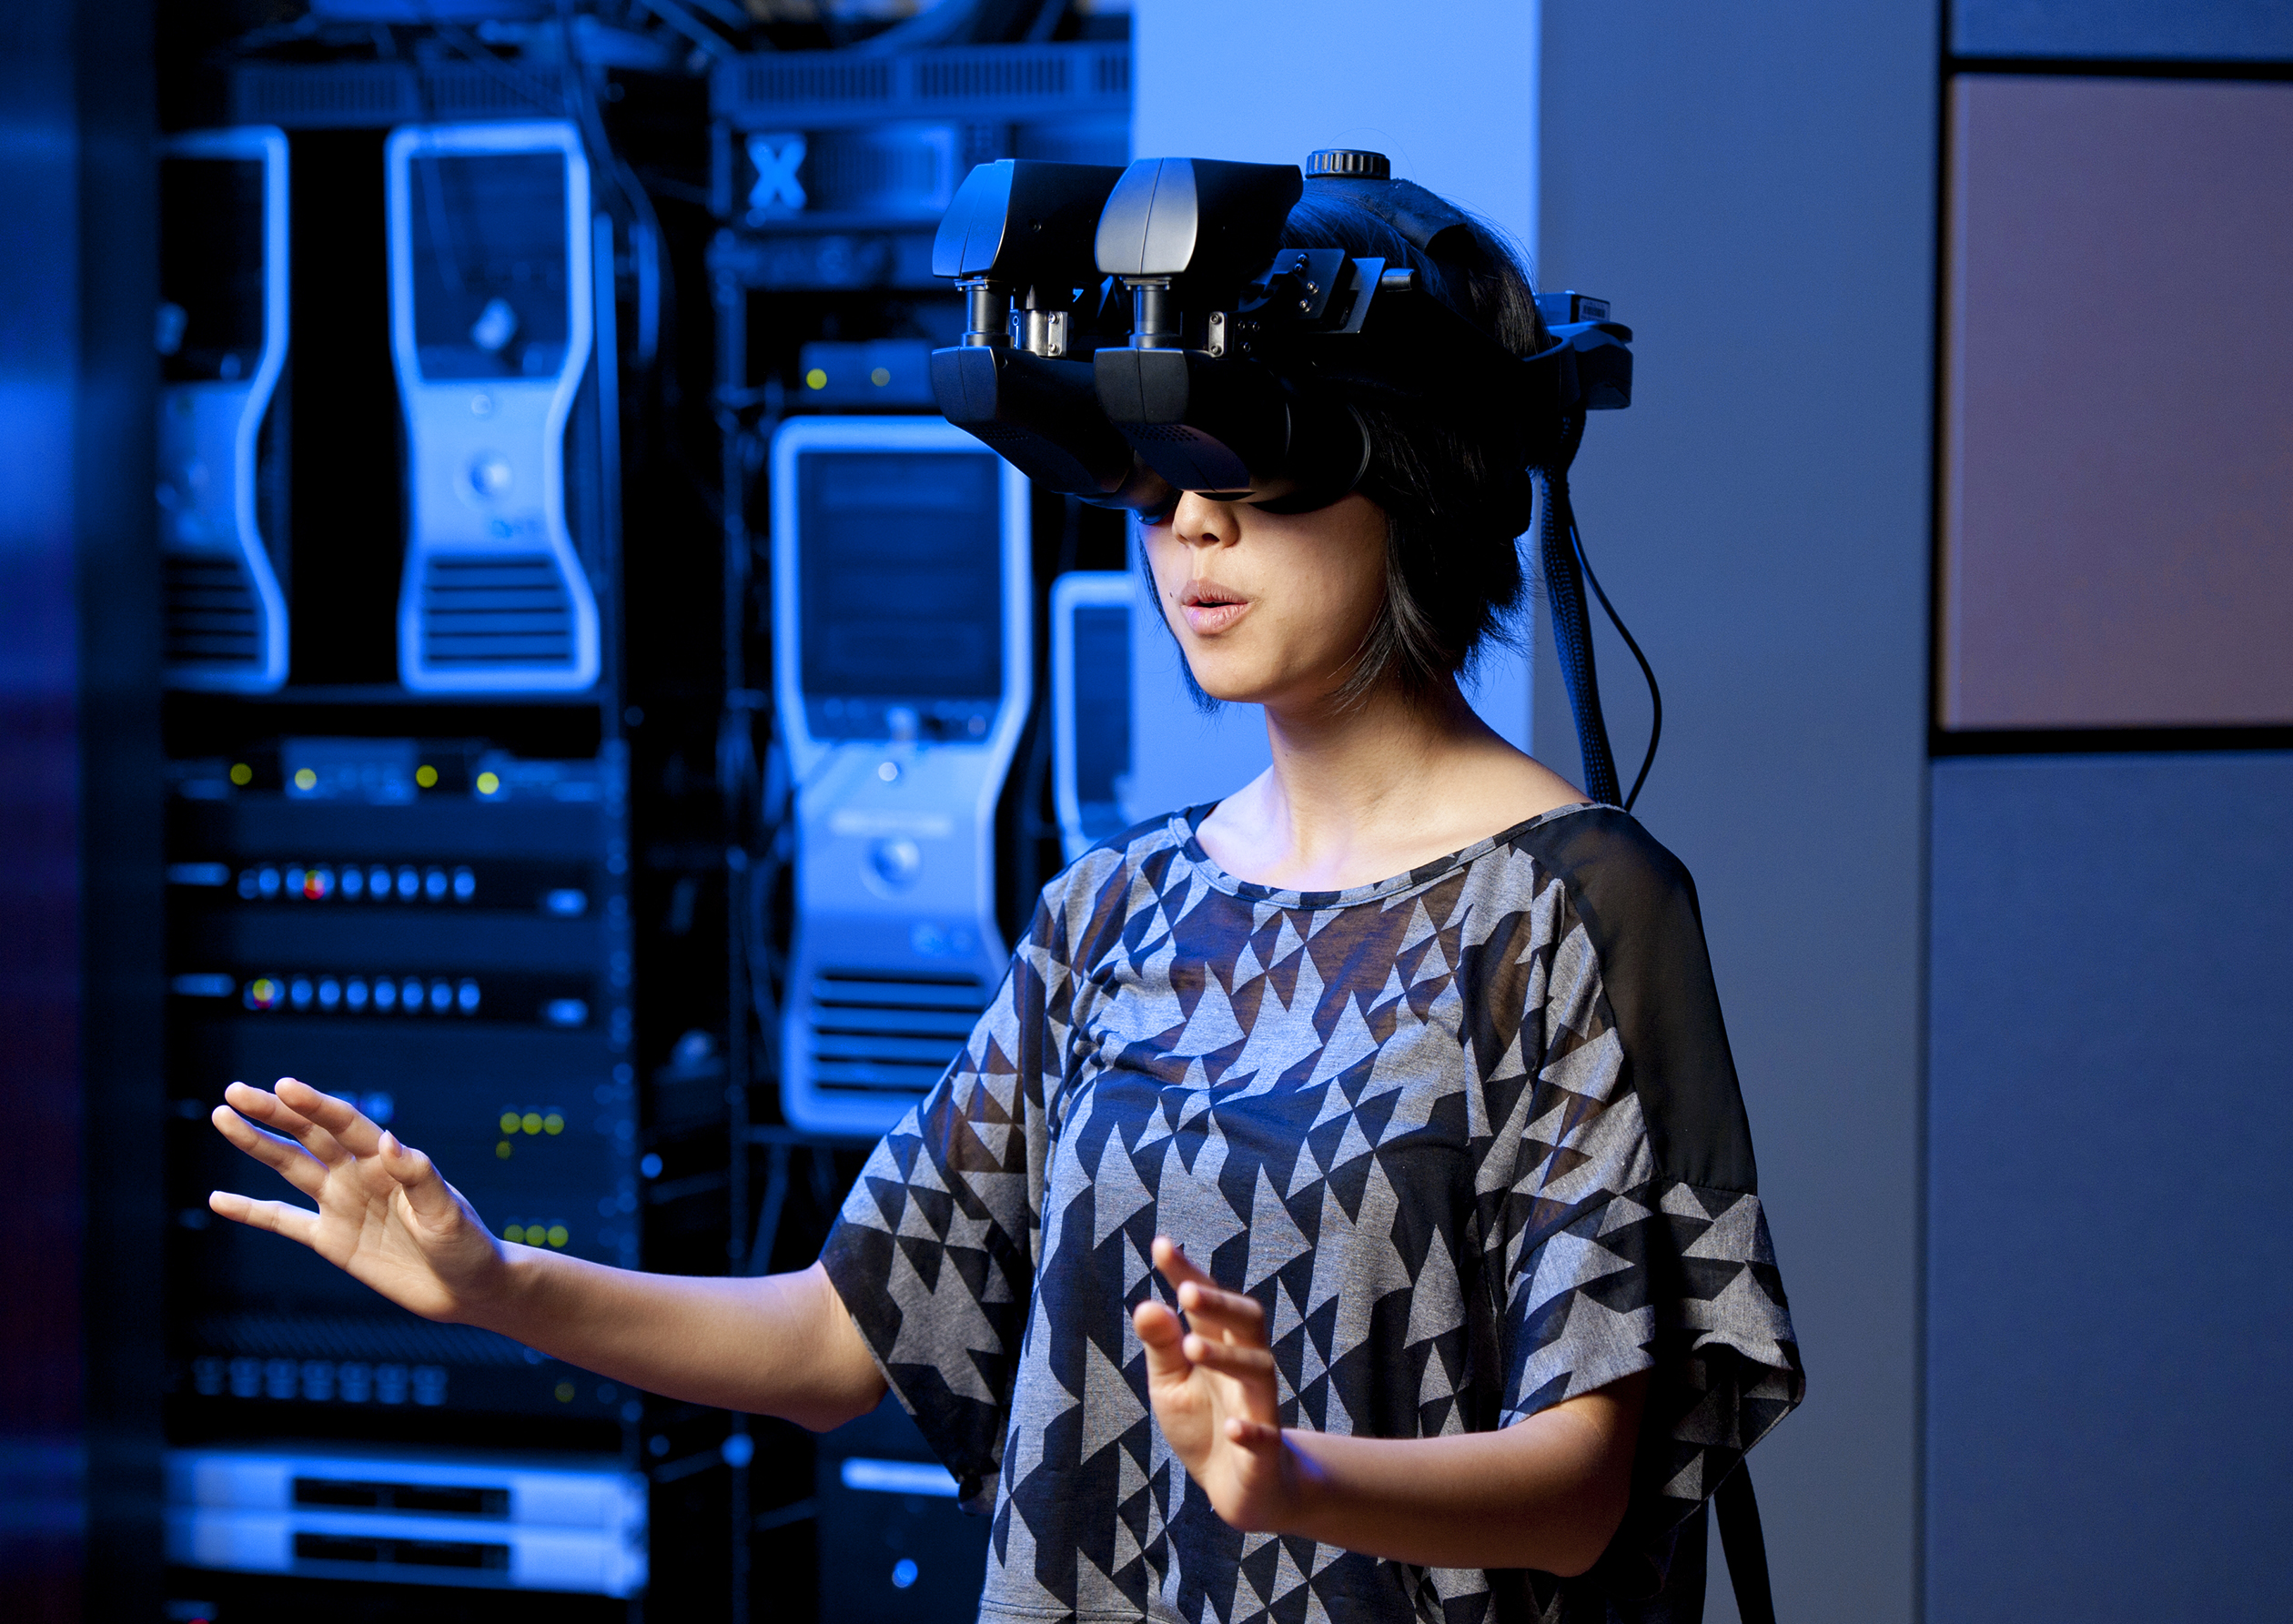 Demo công nghệ thực tế ảo - sản phẩm của phòng thí nghiệm tương tác con người (Human Interaction Lab) tại Đại học Stanford.